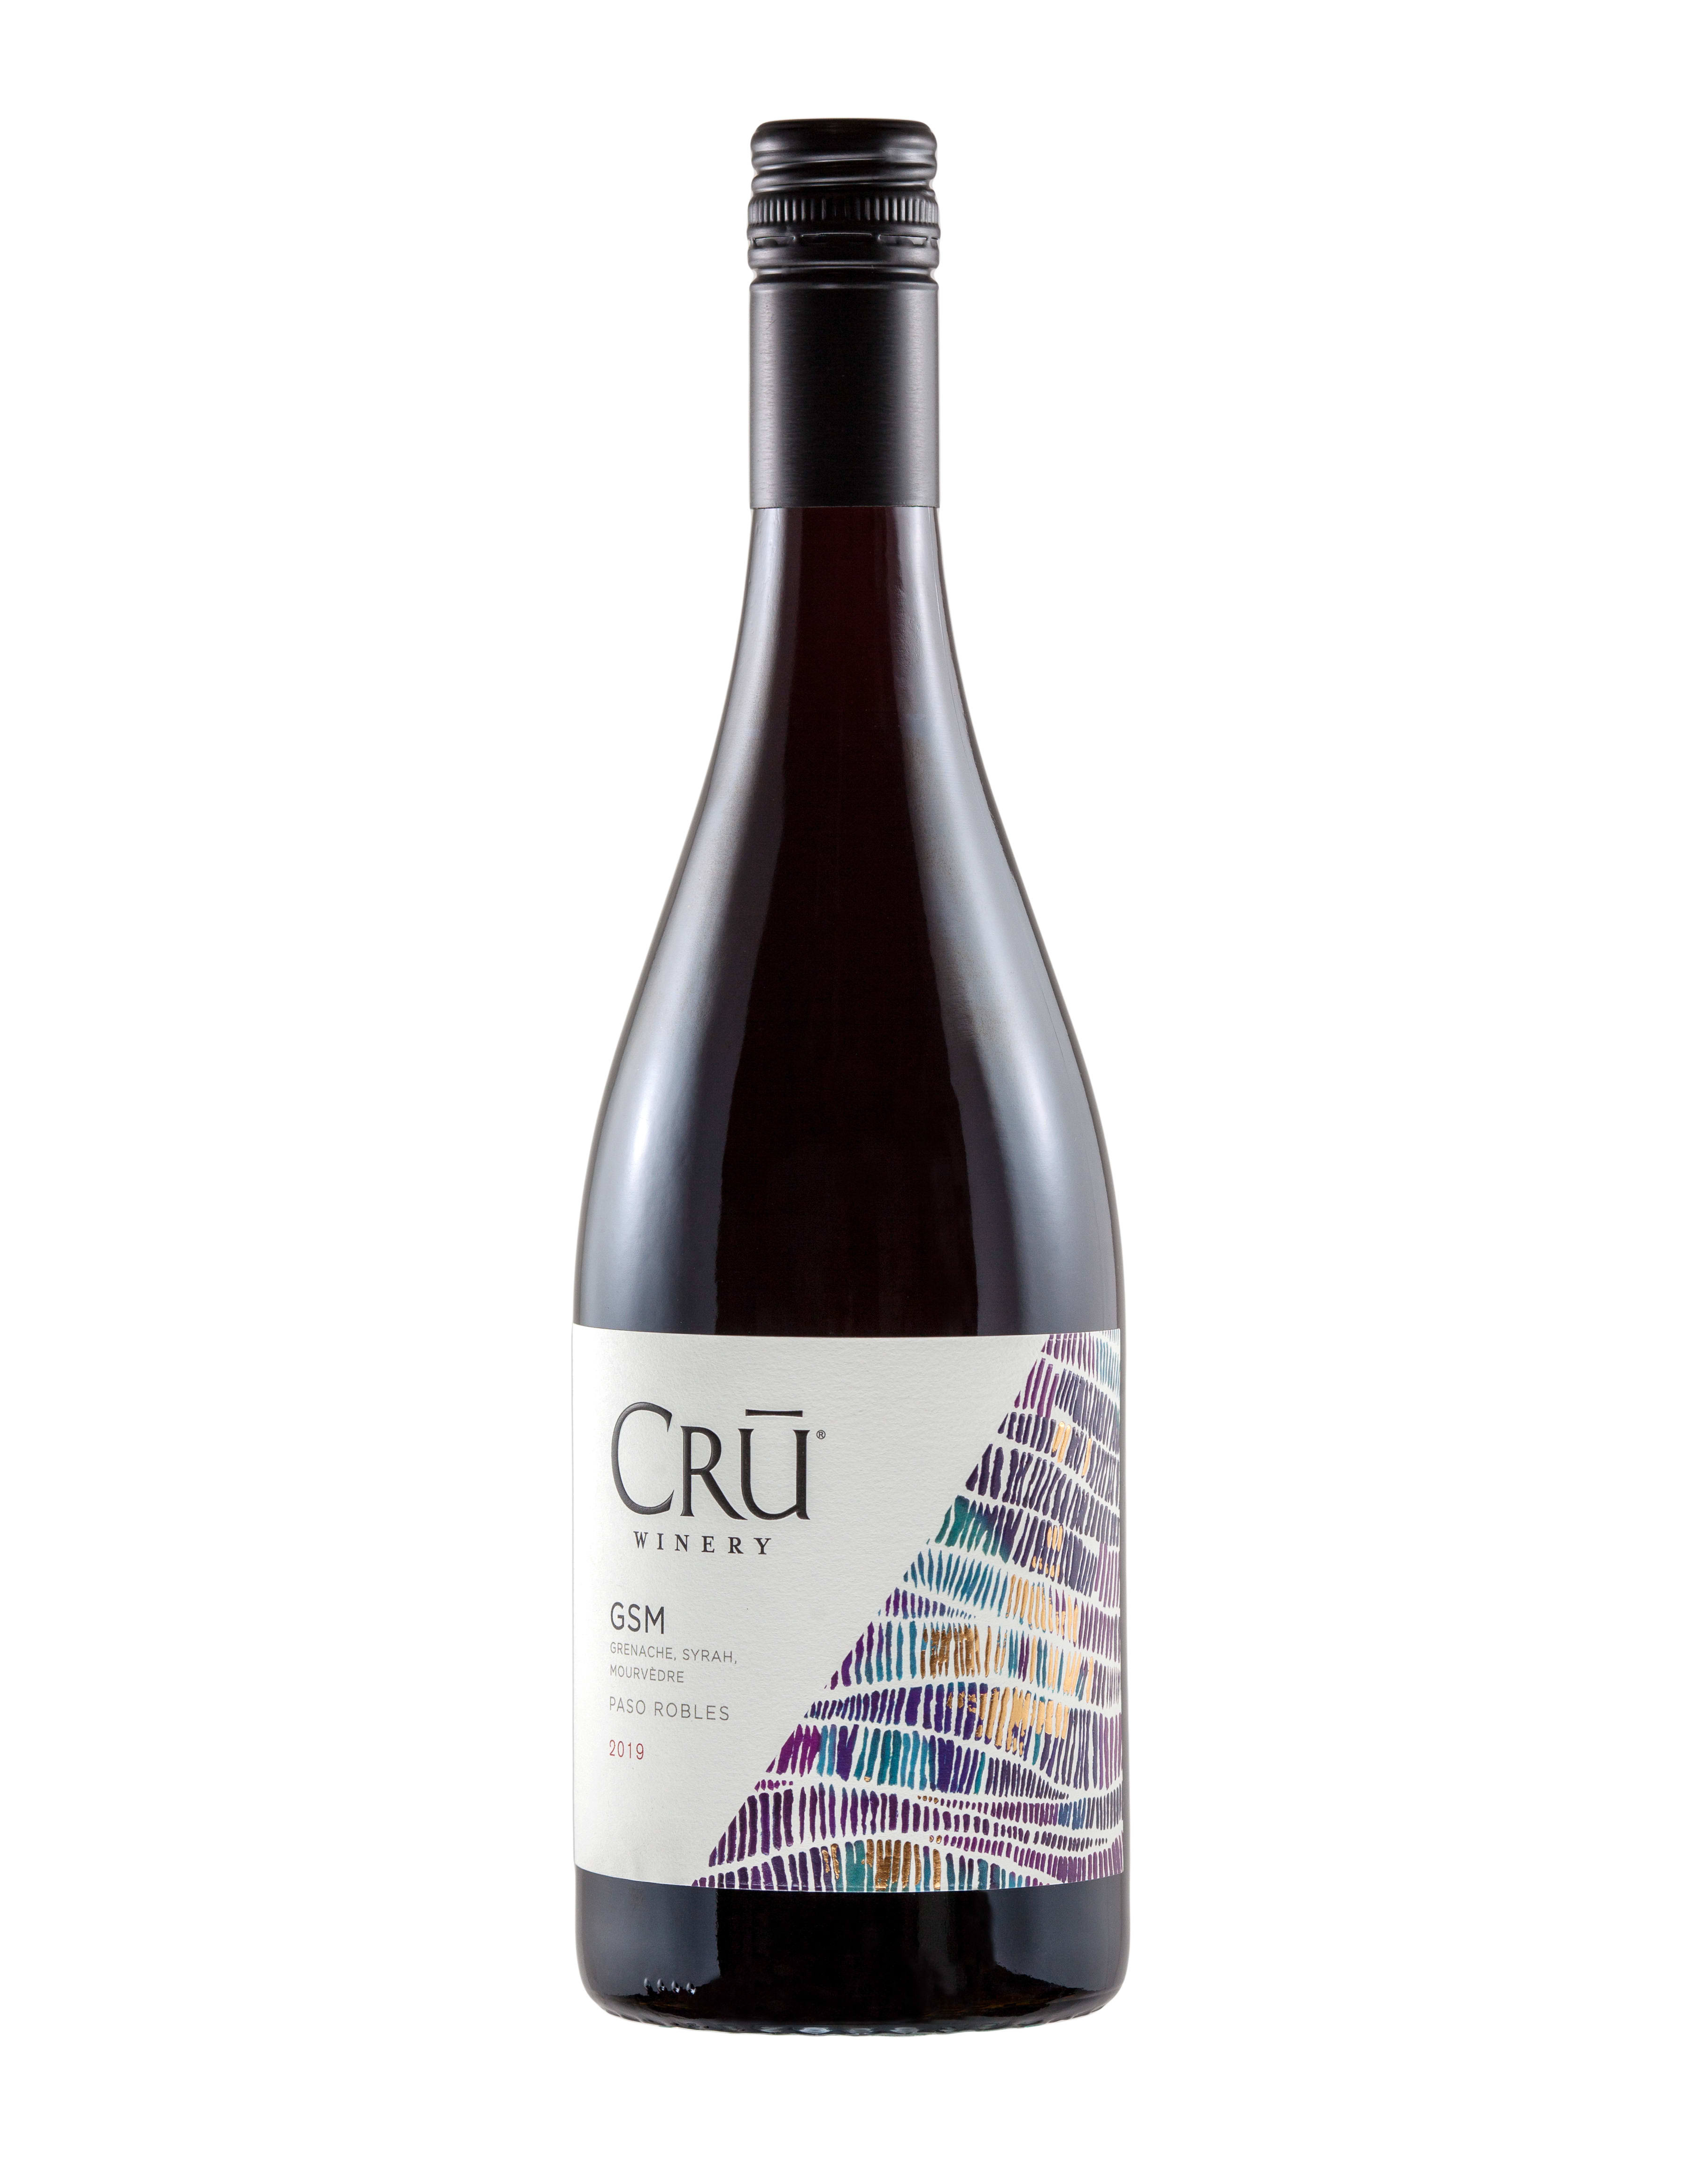 Cru GSM Red Blend 2019 Wine from California - 750ml